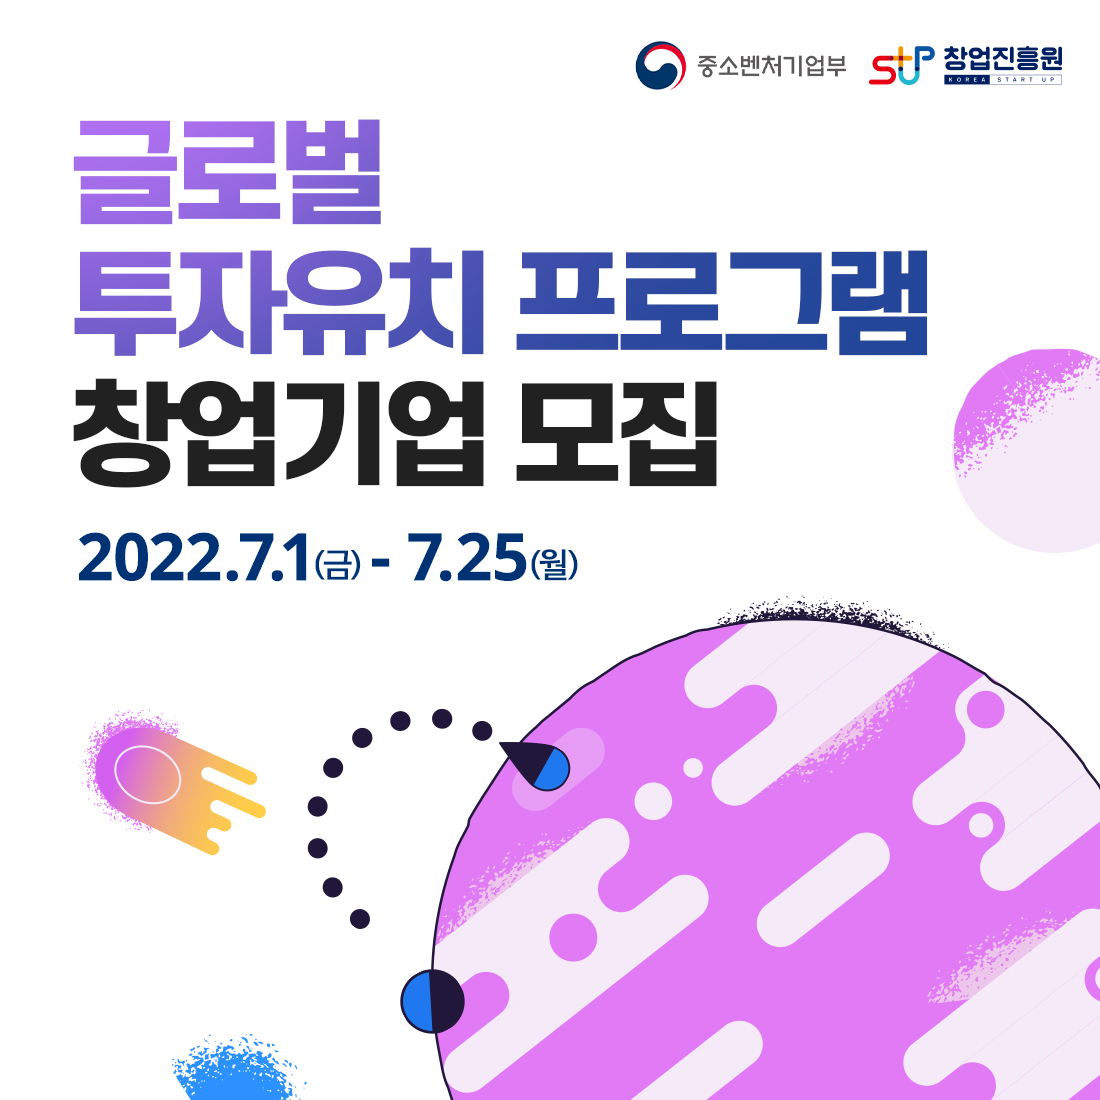 중소벤처기업부(로고) 창업진흥원(로고)

글로벌
투자유치 프로그램
창업기업 모집

2022.7.1(금) - 7.25(월)